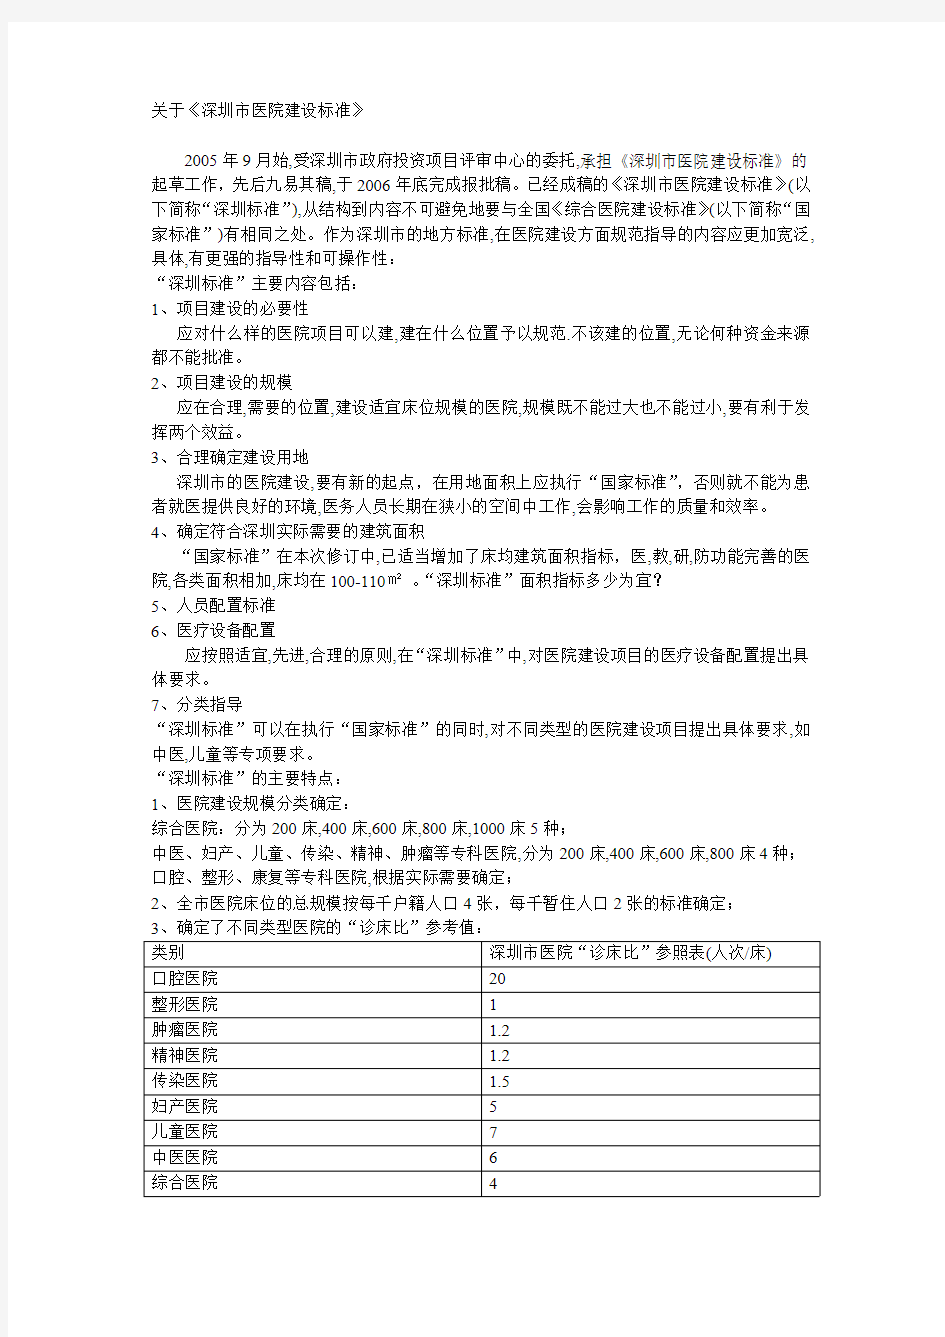 深圳市综合医院建设标准解读